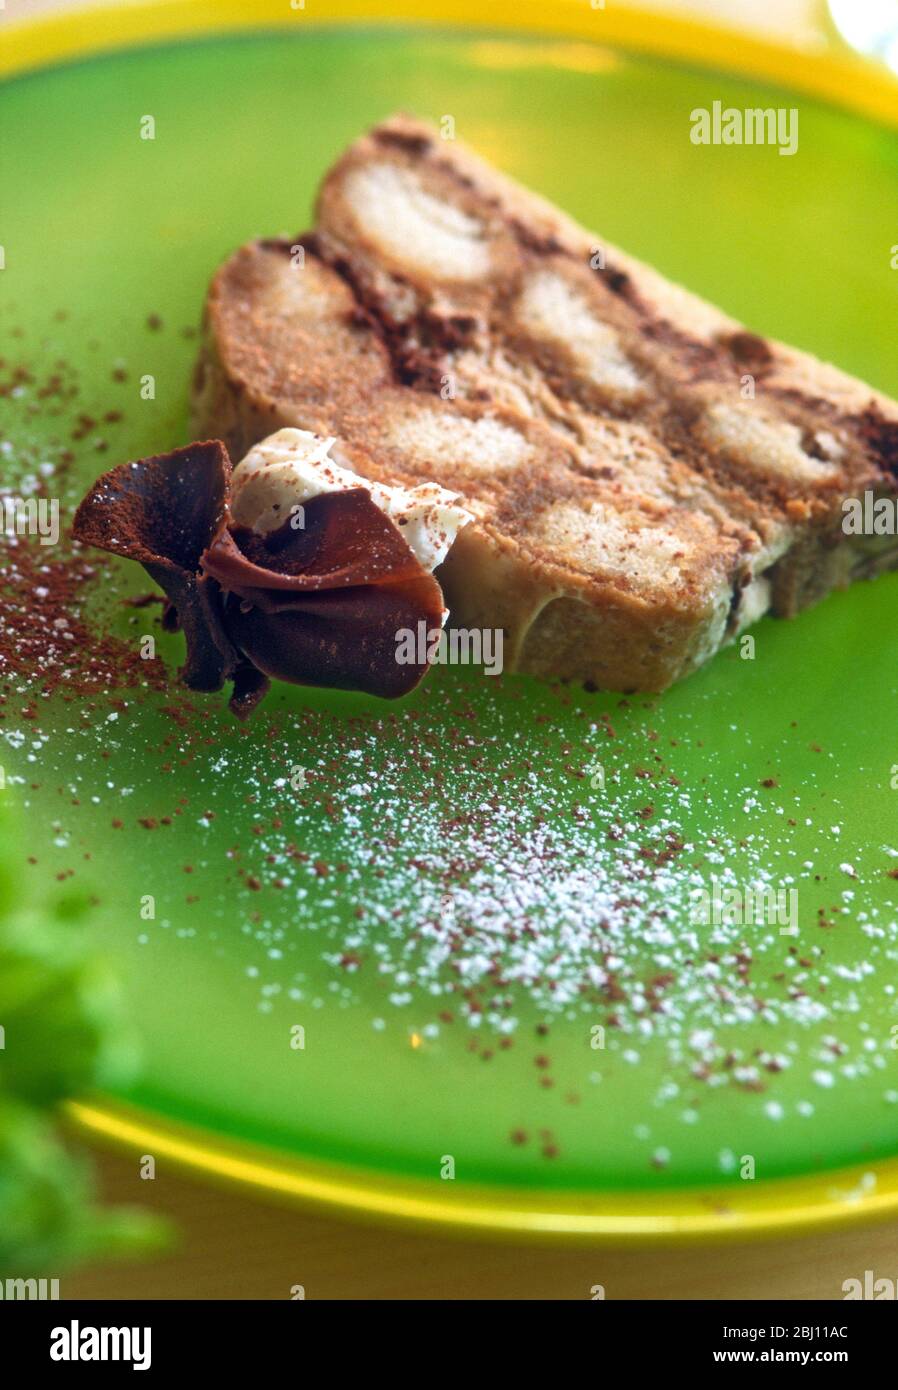 Scheibe Schokolade Baiser Dessert auf grünem Glasplatte, mit Puderzucker bestäubt. - Stockfoto